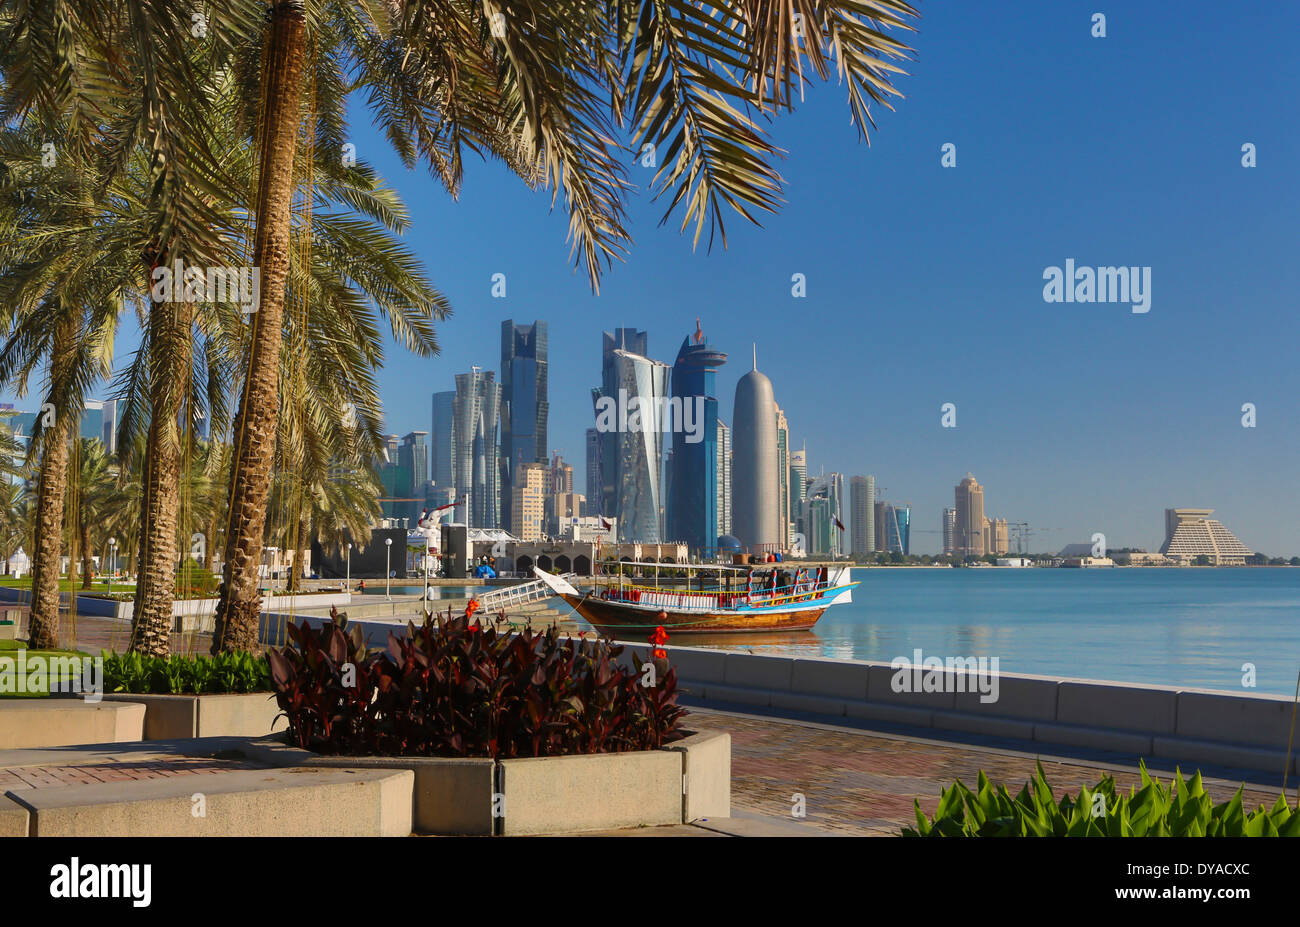 Al Bidda Burj Doha in Qatar Medio Oriente World Trade Center architettura barca bay city colorato corniche avveniristico Palm tree p Foto Stock